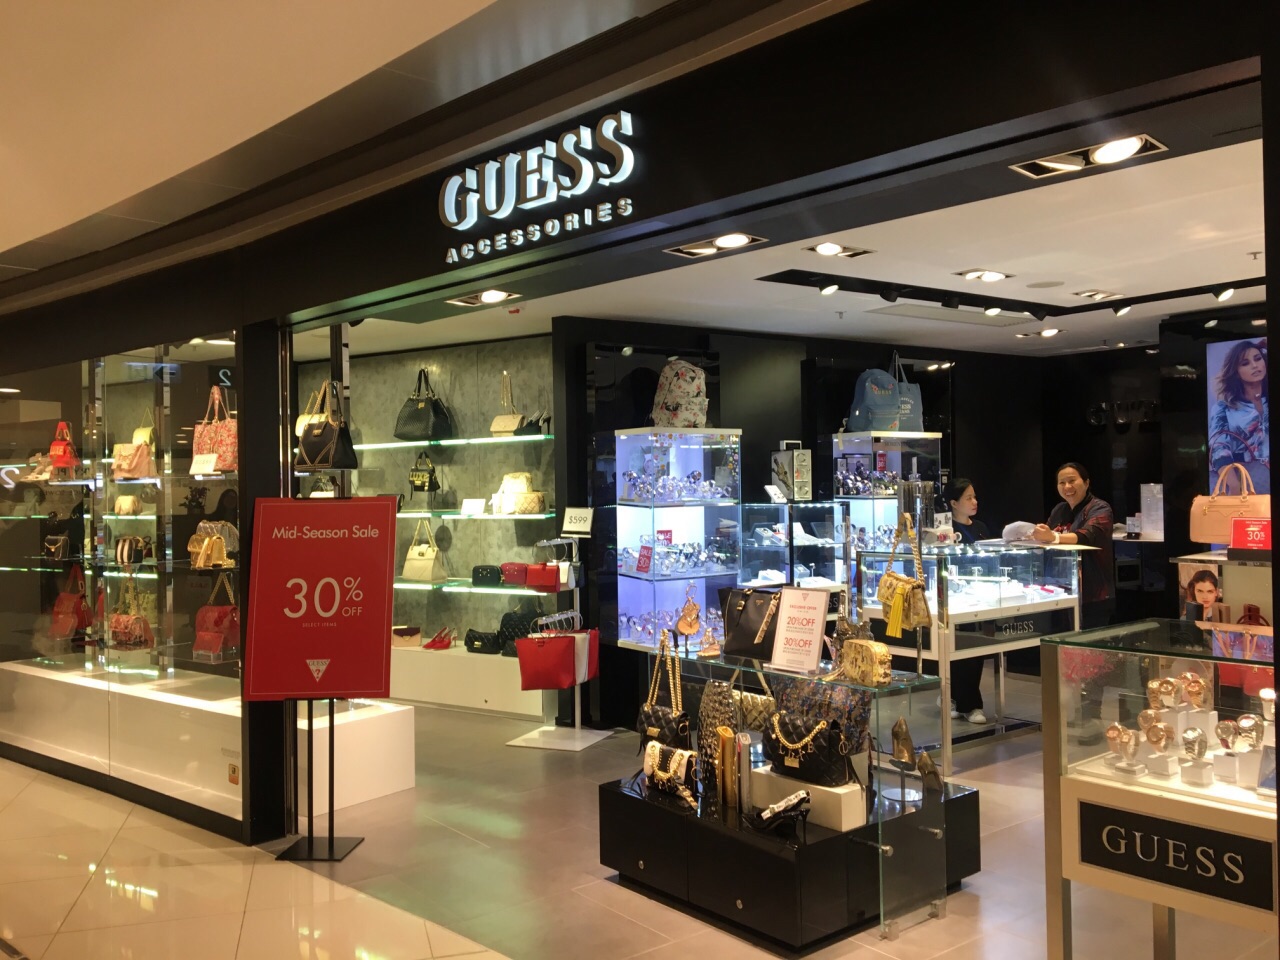 香港guess 又一城店 购物攻略 Guess 又一城店 物中心 地址 电话 营业时间 携程攻略